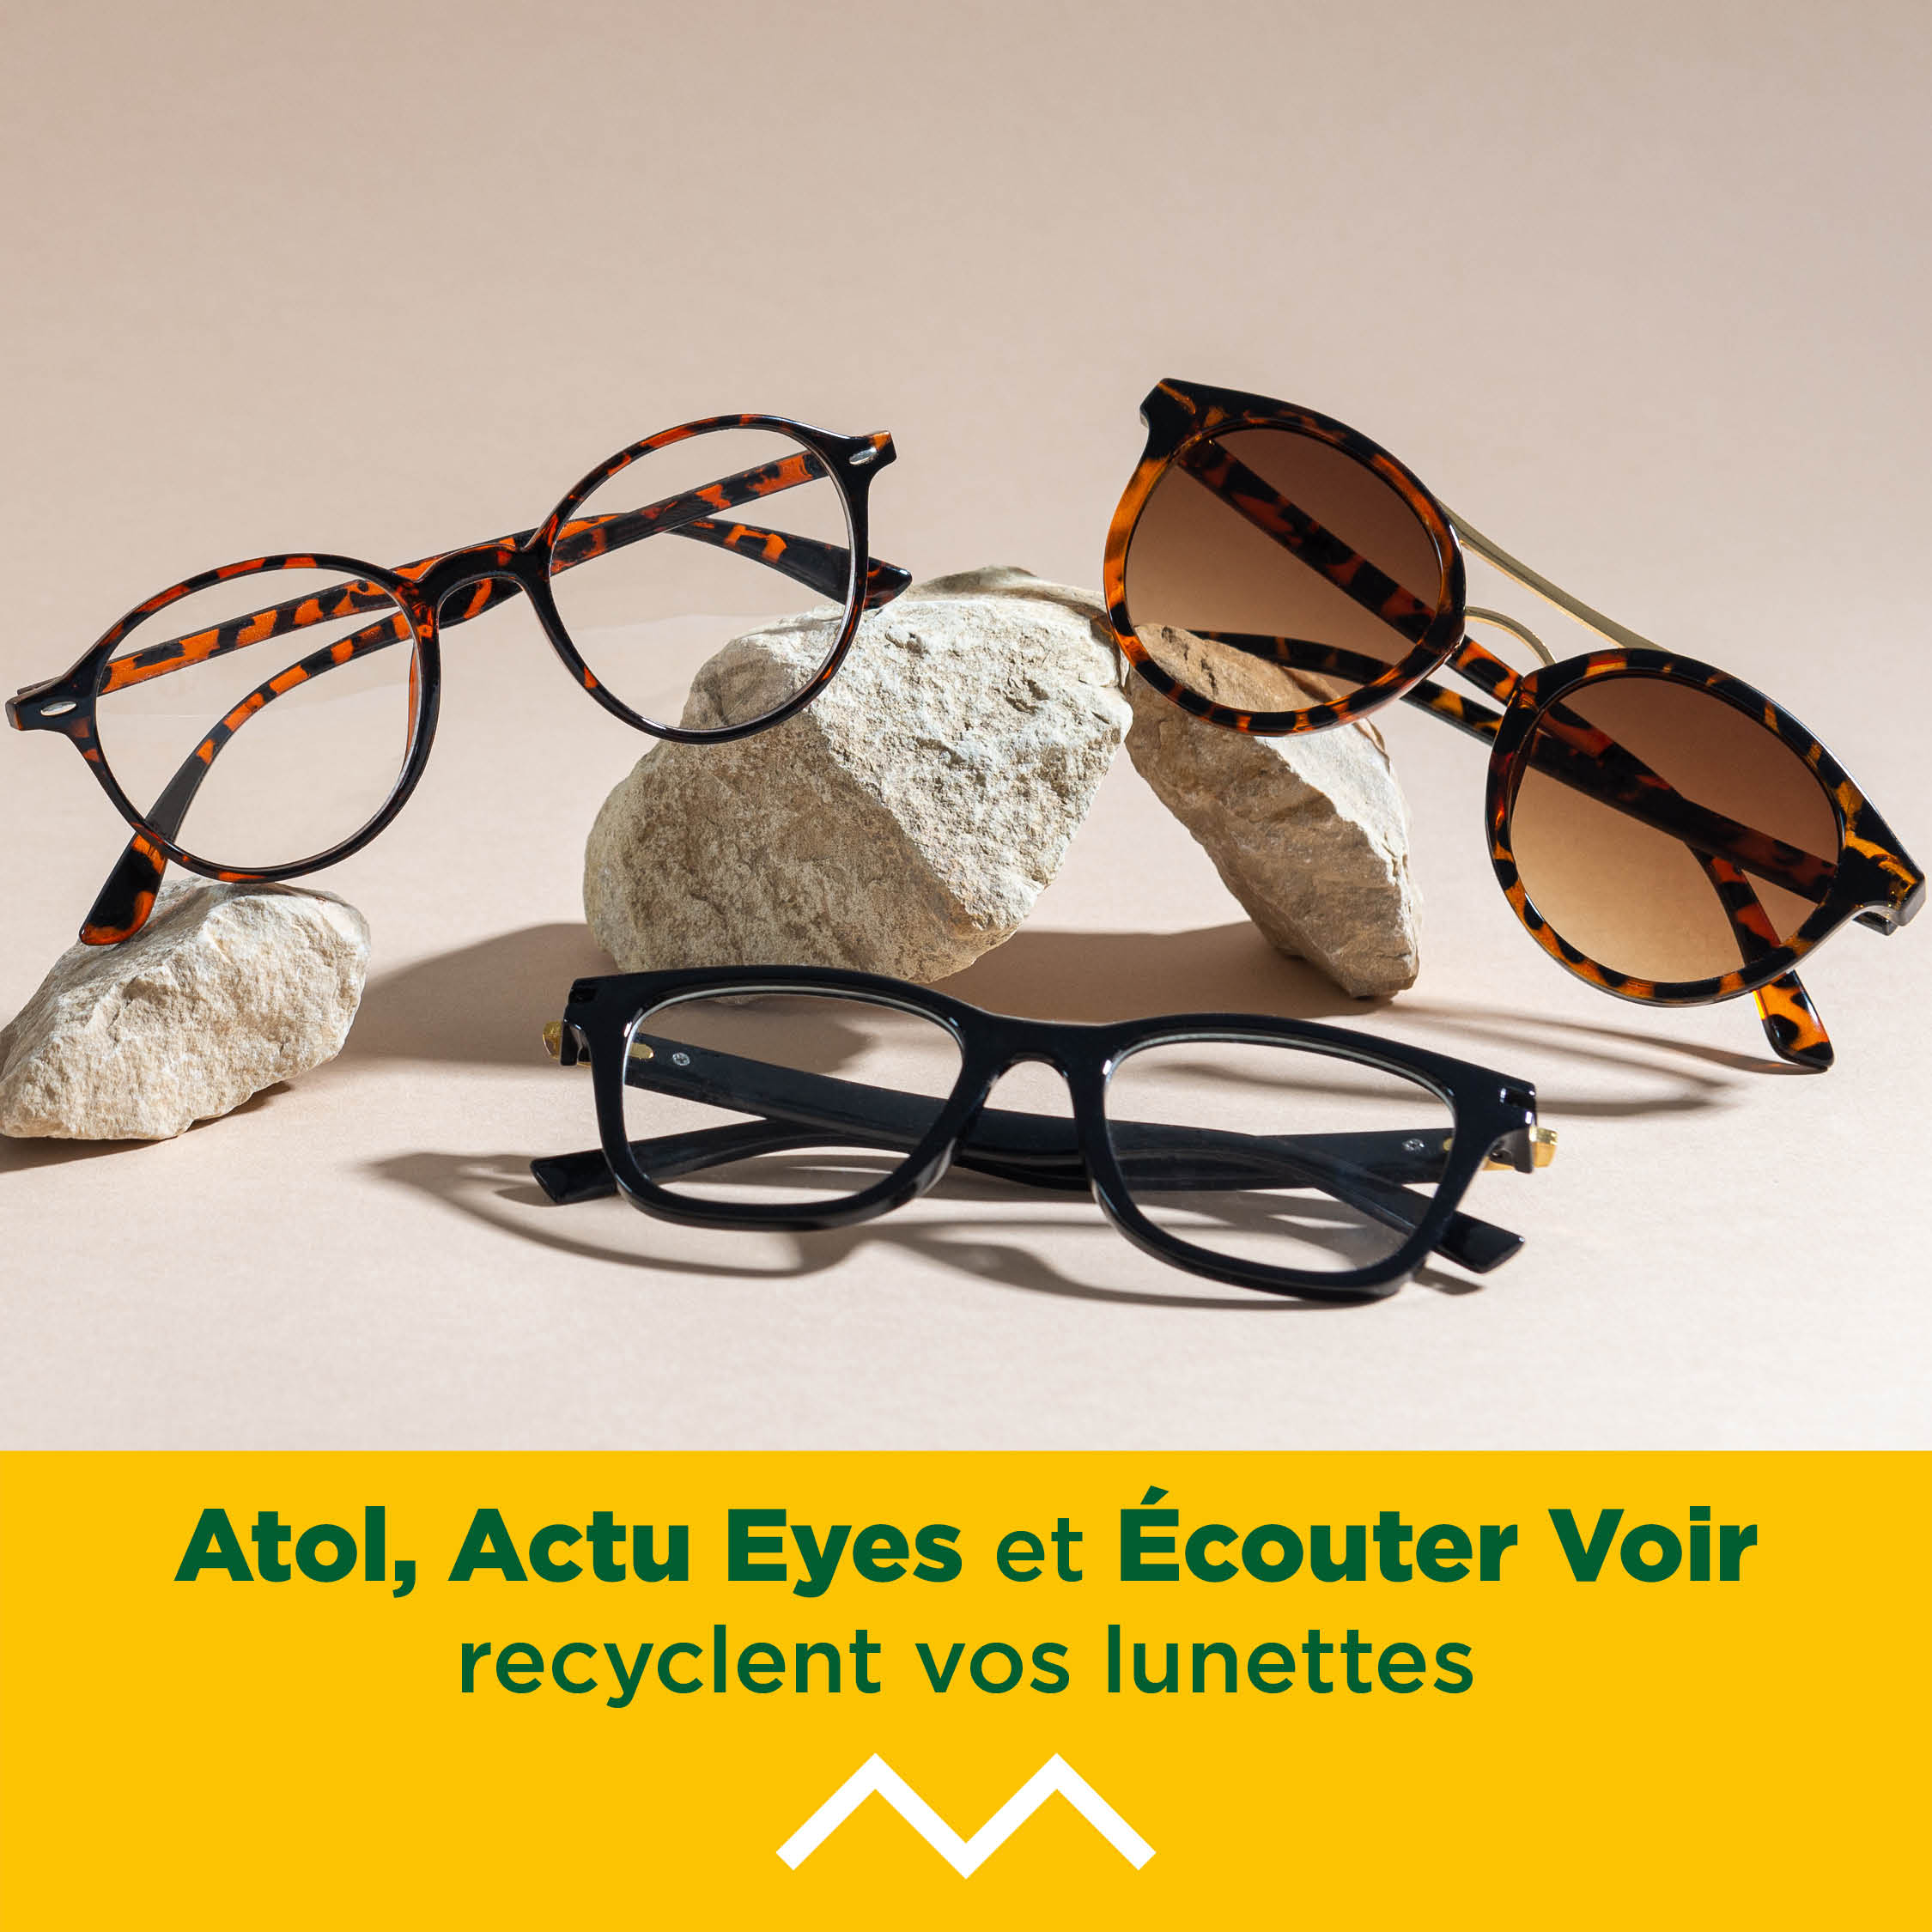 Recyclage des lunettes avec Galerie Beaulieu